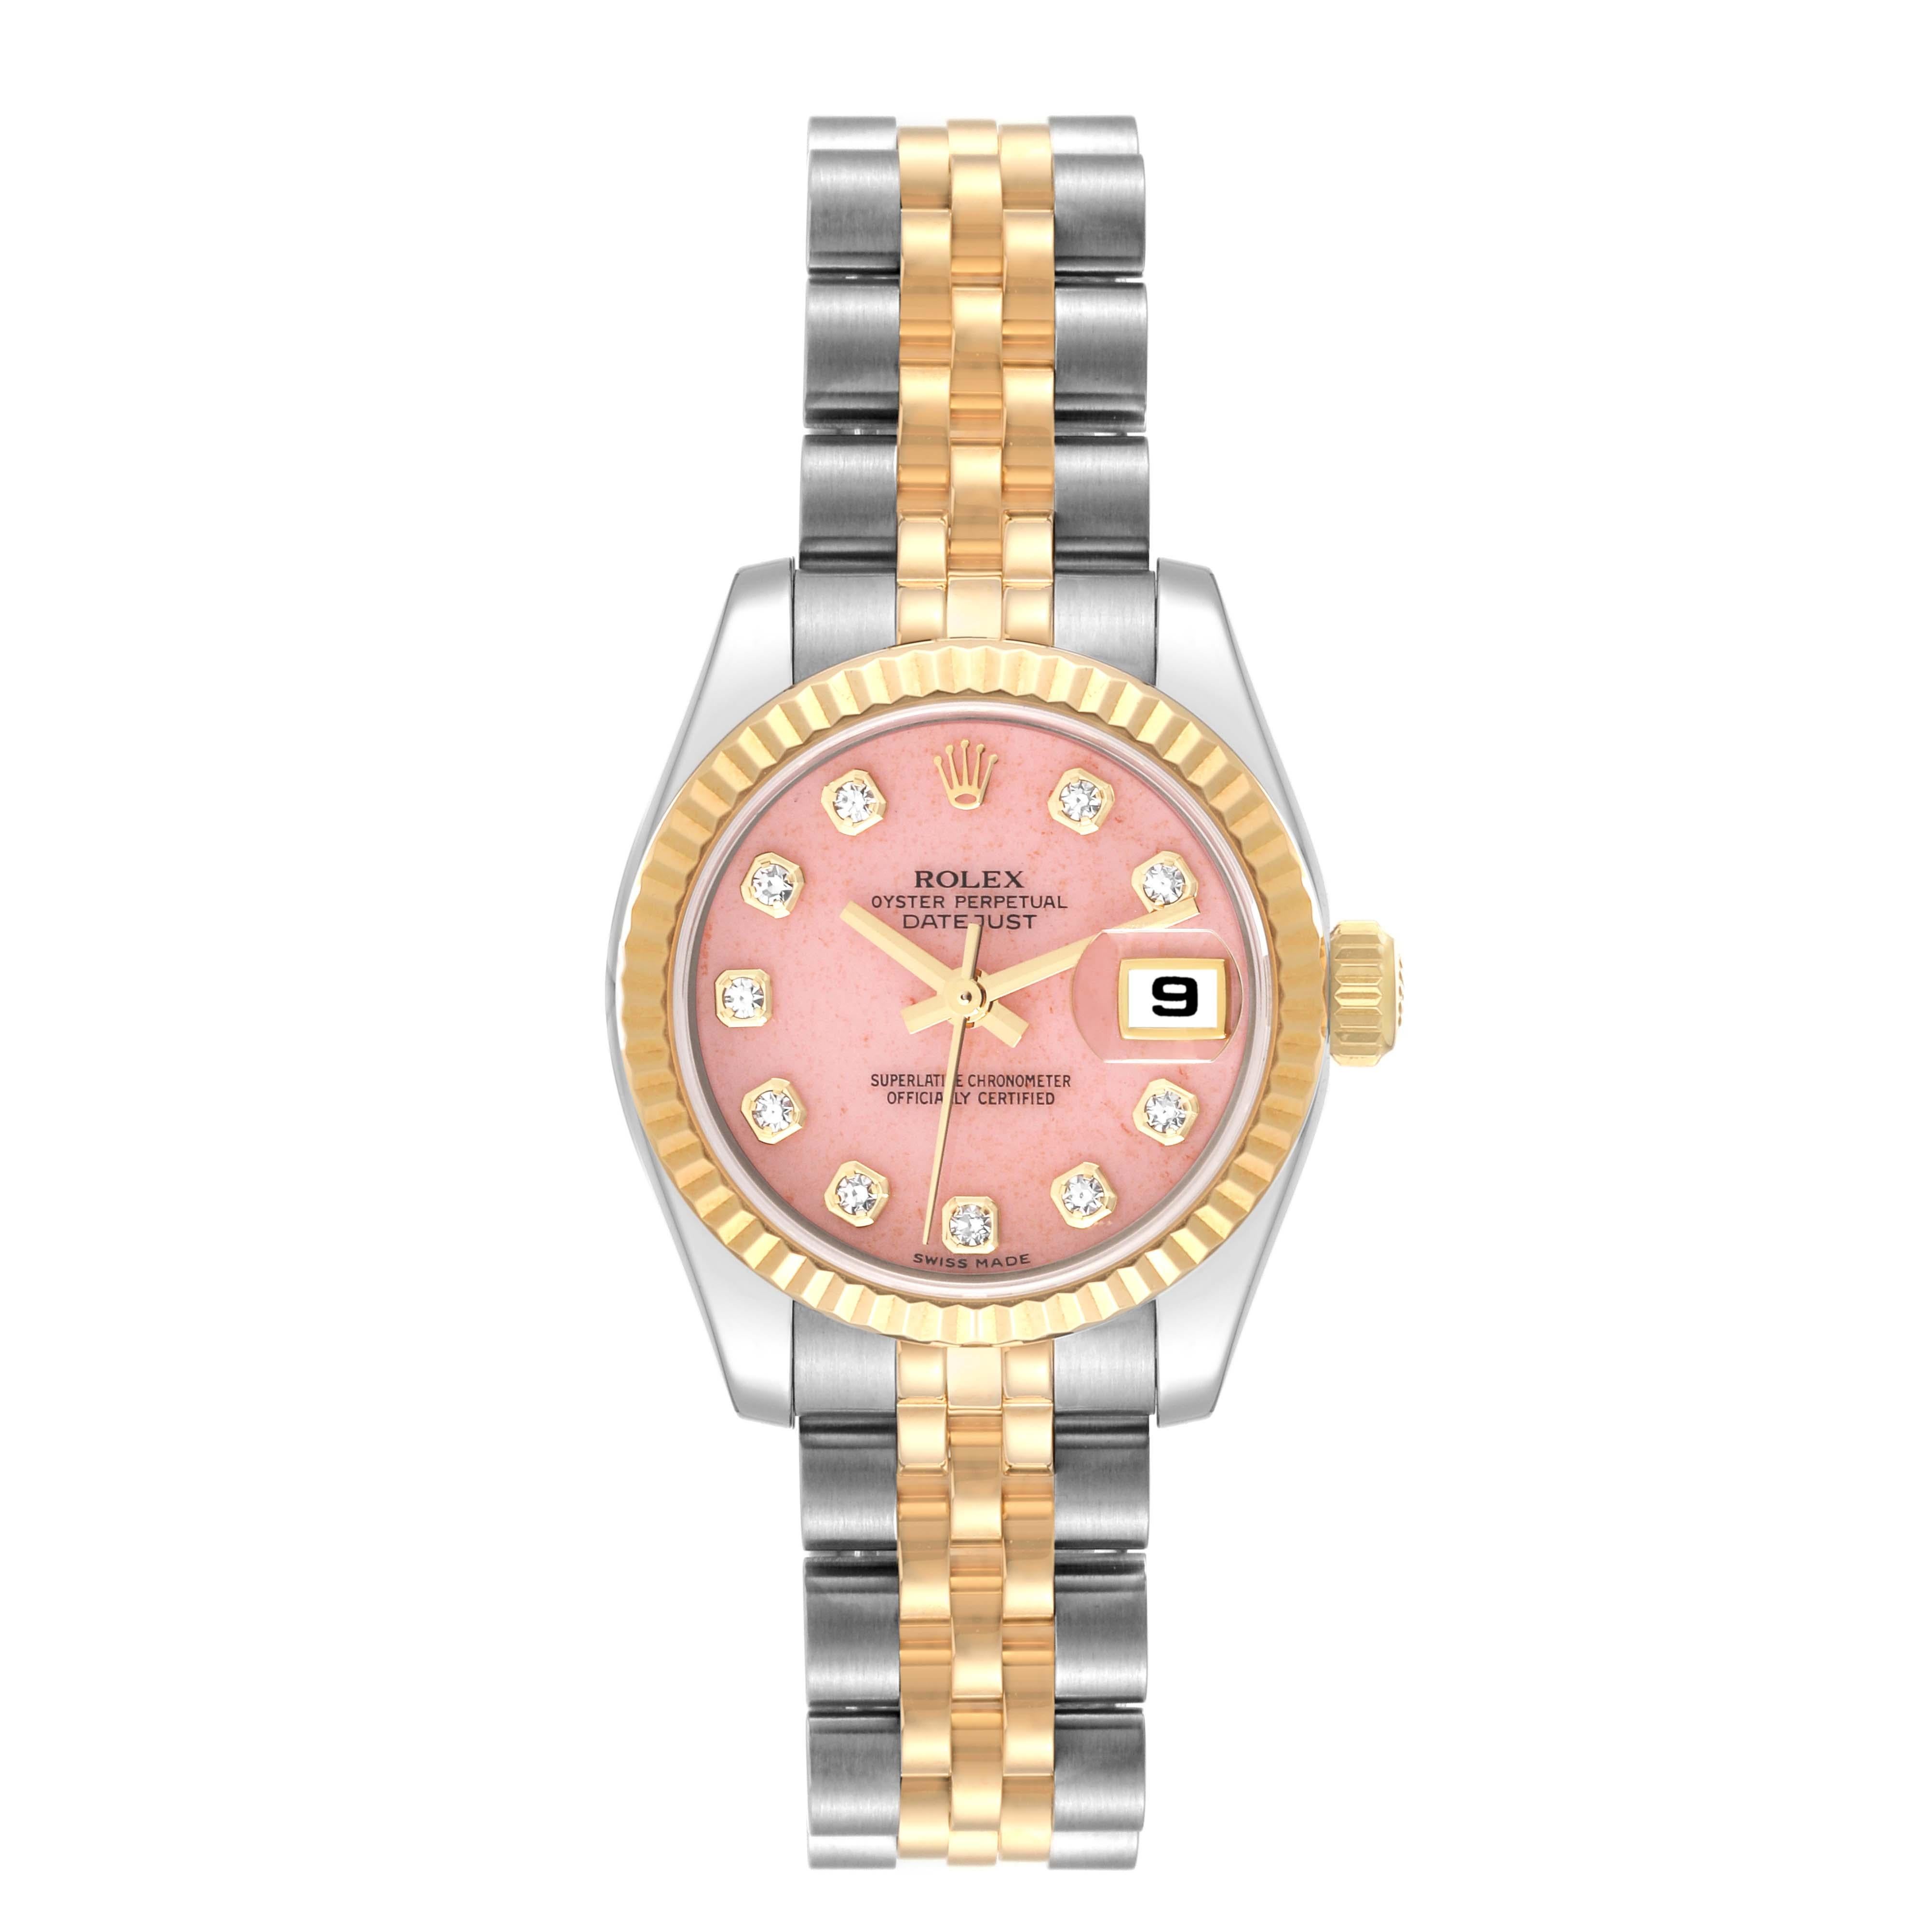 Rolex Datejust Steel Yellow Gold Coral Diamond Dial Ladies Watch 179173. Mouvement à remontage automatique certifié officiellement chronomètre. Boîtier oyster en acier inoxydable de 26 mm de diamètre. Logo Rolex sur une couronne en or jaune 18